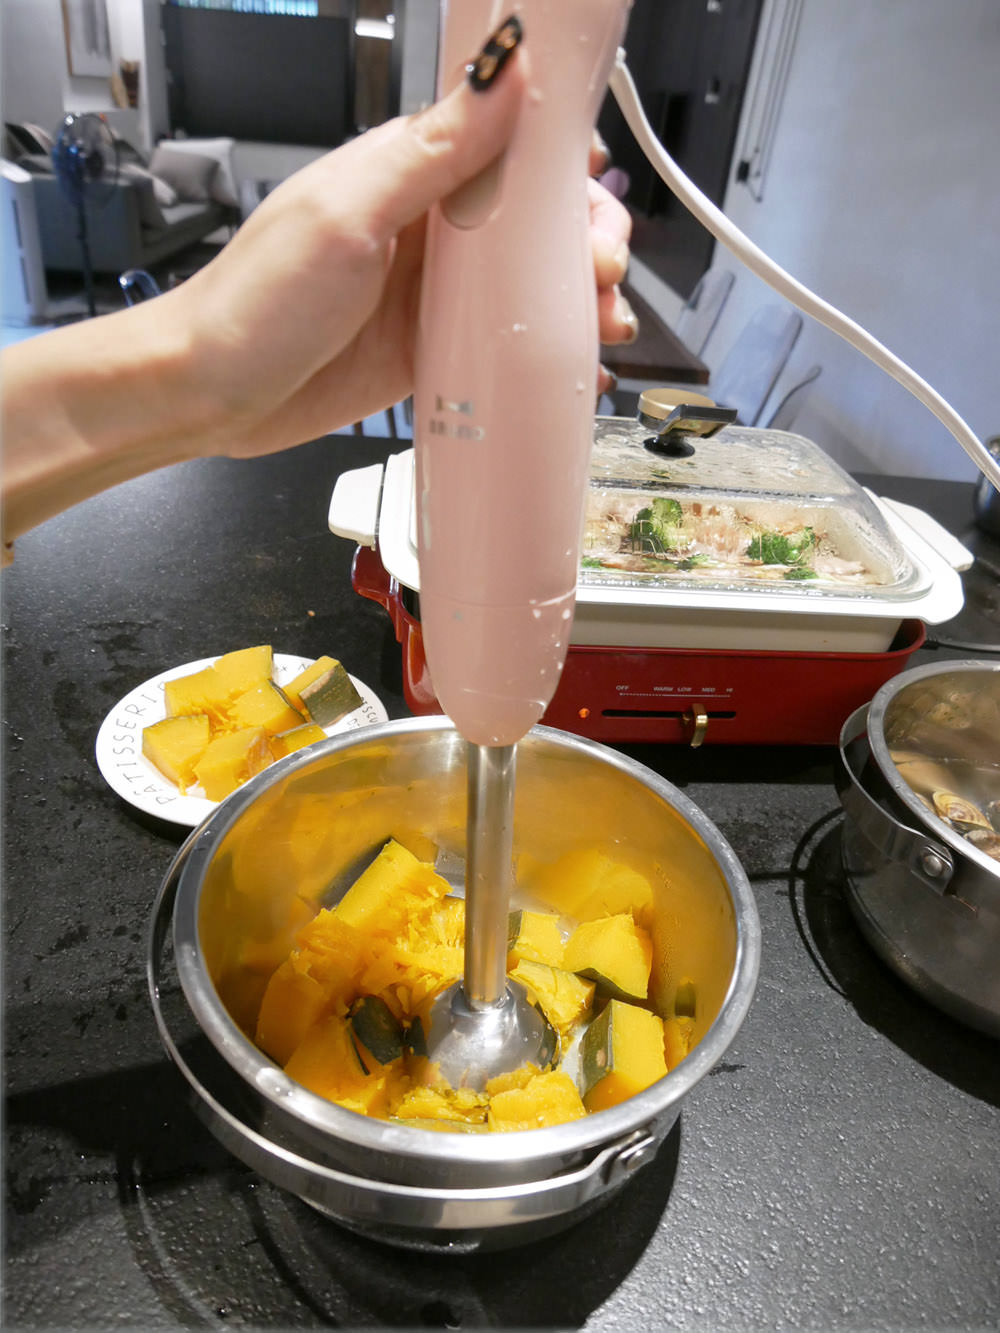 [啾團] 日本BRUNO電動手持式四件組攪拌棒.媽媽的料理神器.讓料理簡單快速又看起來很厲害